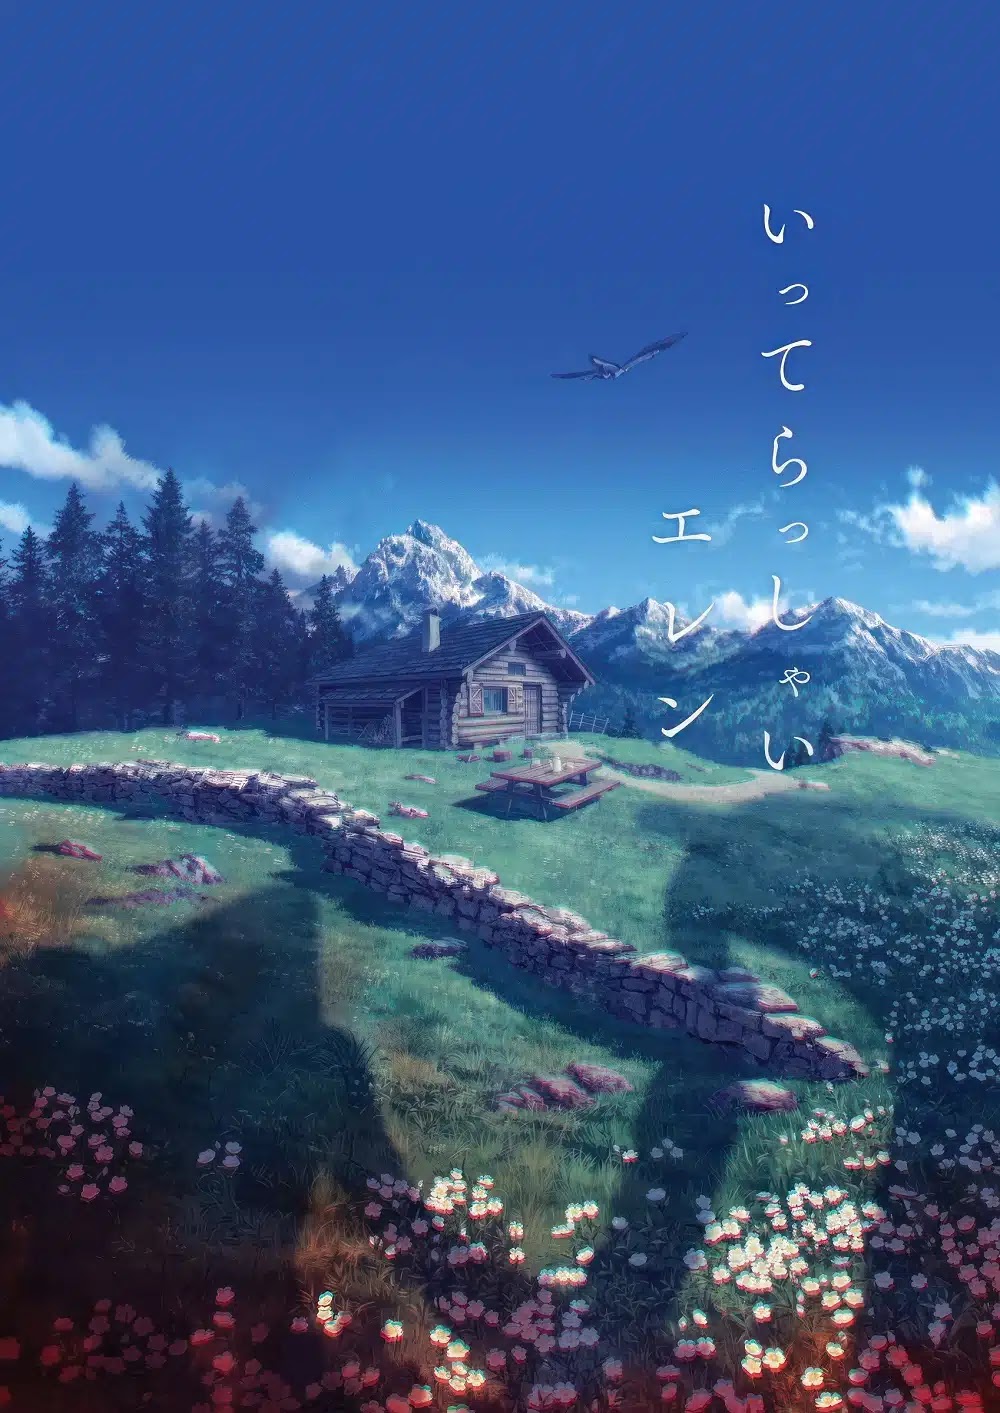 Sale un épico tráiler para el final de Shingeki no Kyojin: The Final Season Part 3 con su fecha de estreno